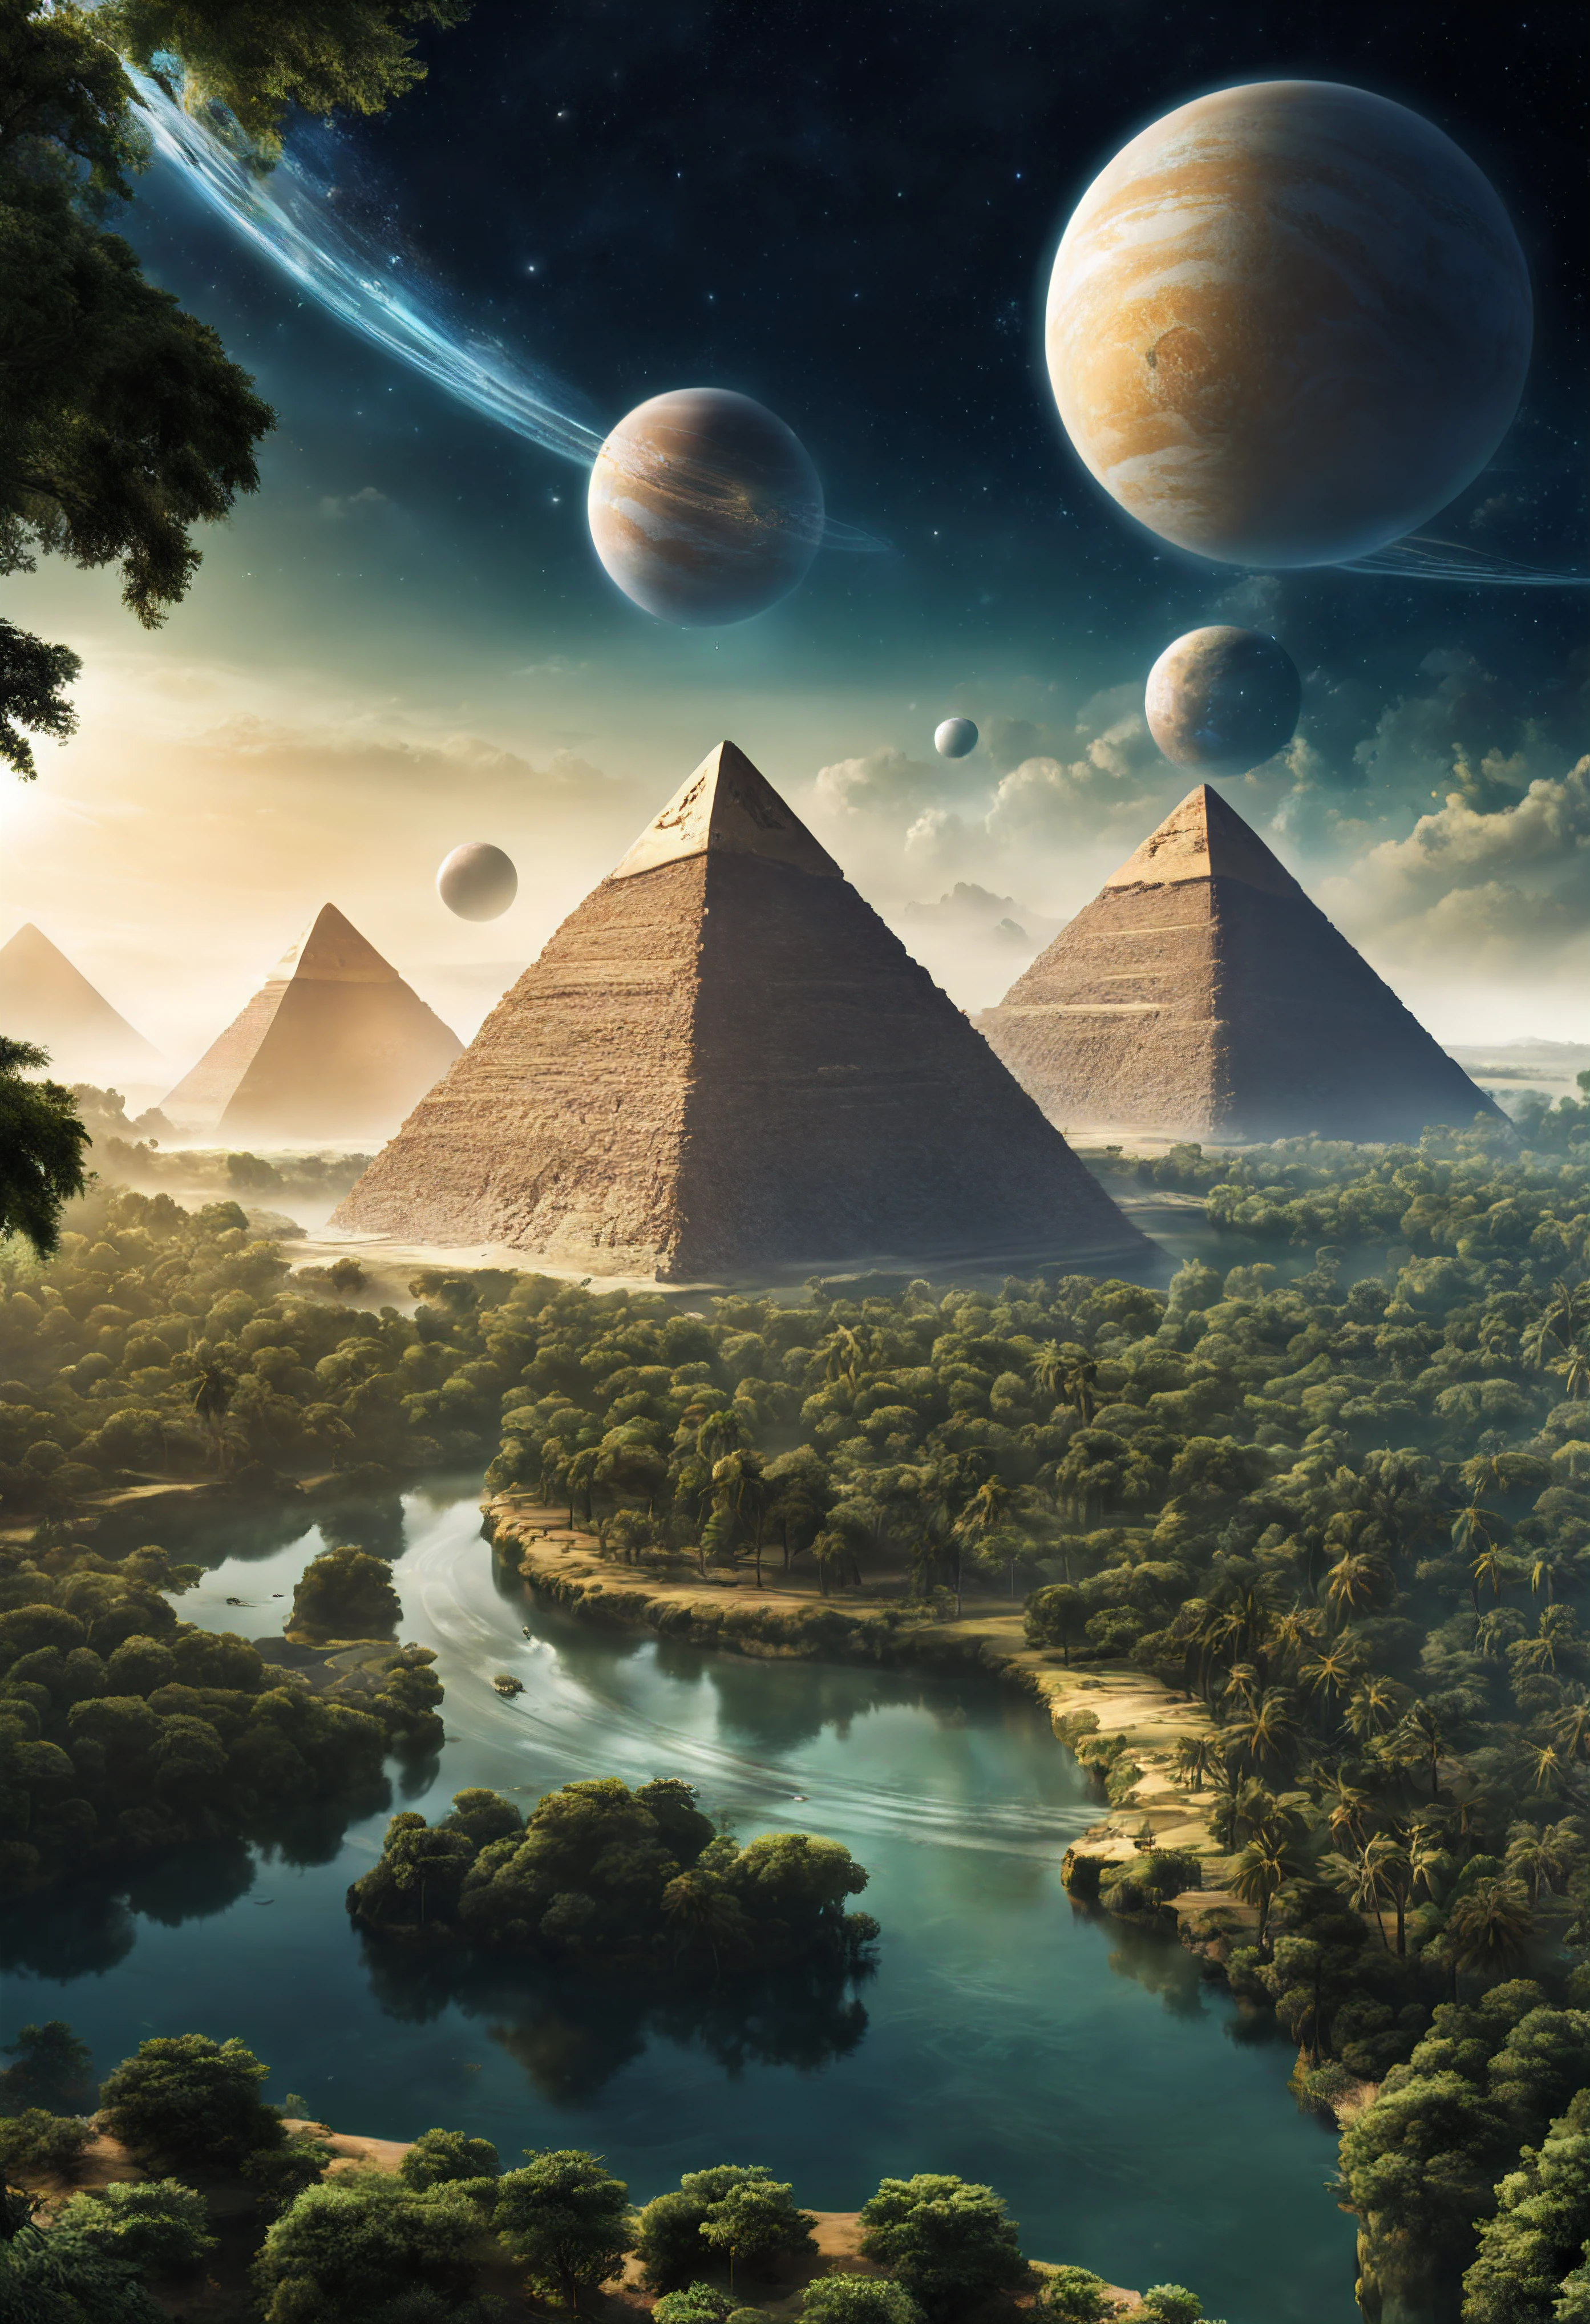 Otro planeta con bosques y ríos., donde hay pirámides y faraones extraterrestres, naves espaciales en forma de pirámides egipcias, Se pueden ver dos planetas satélites en el cielo..